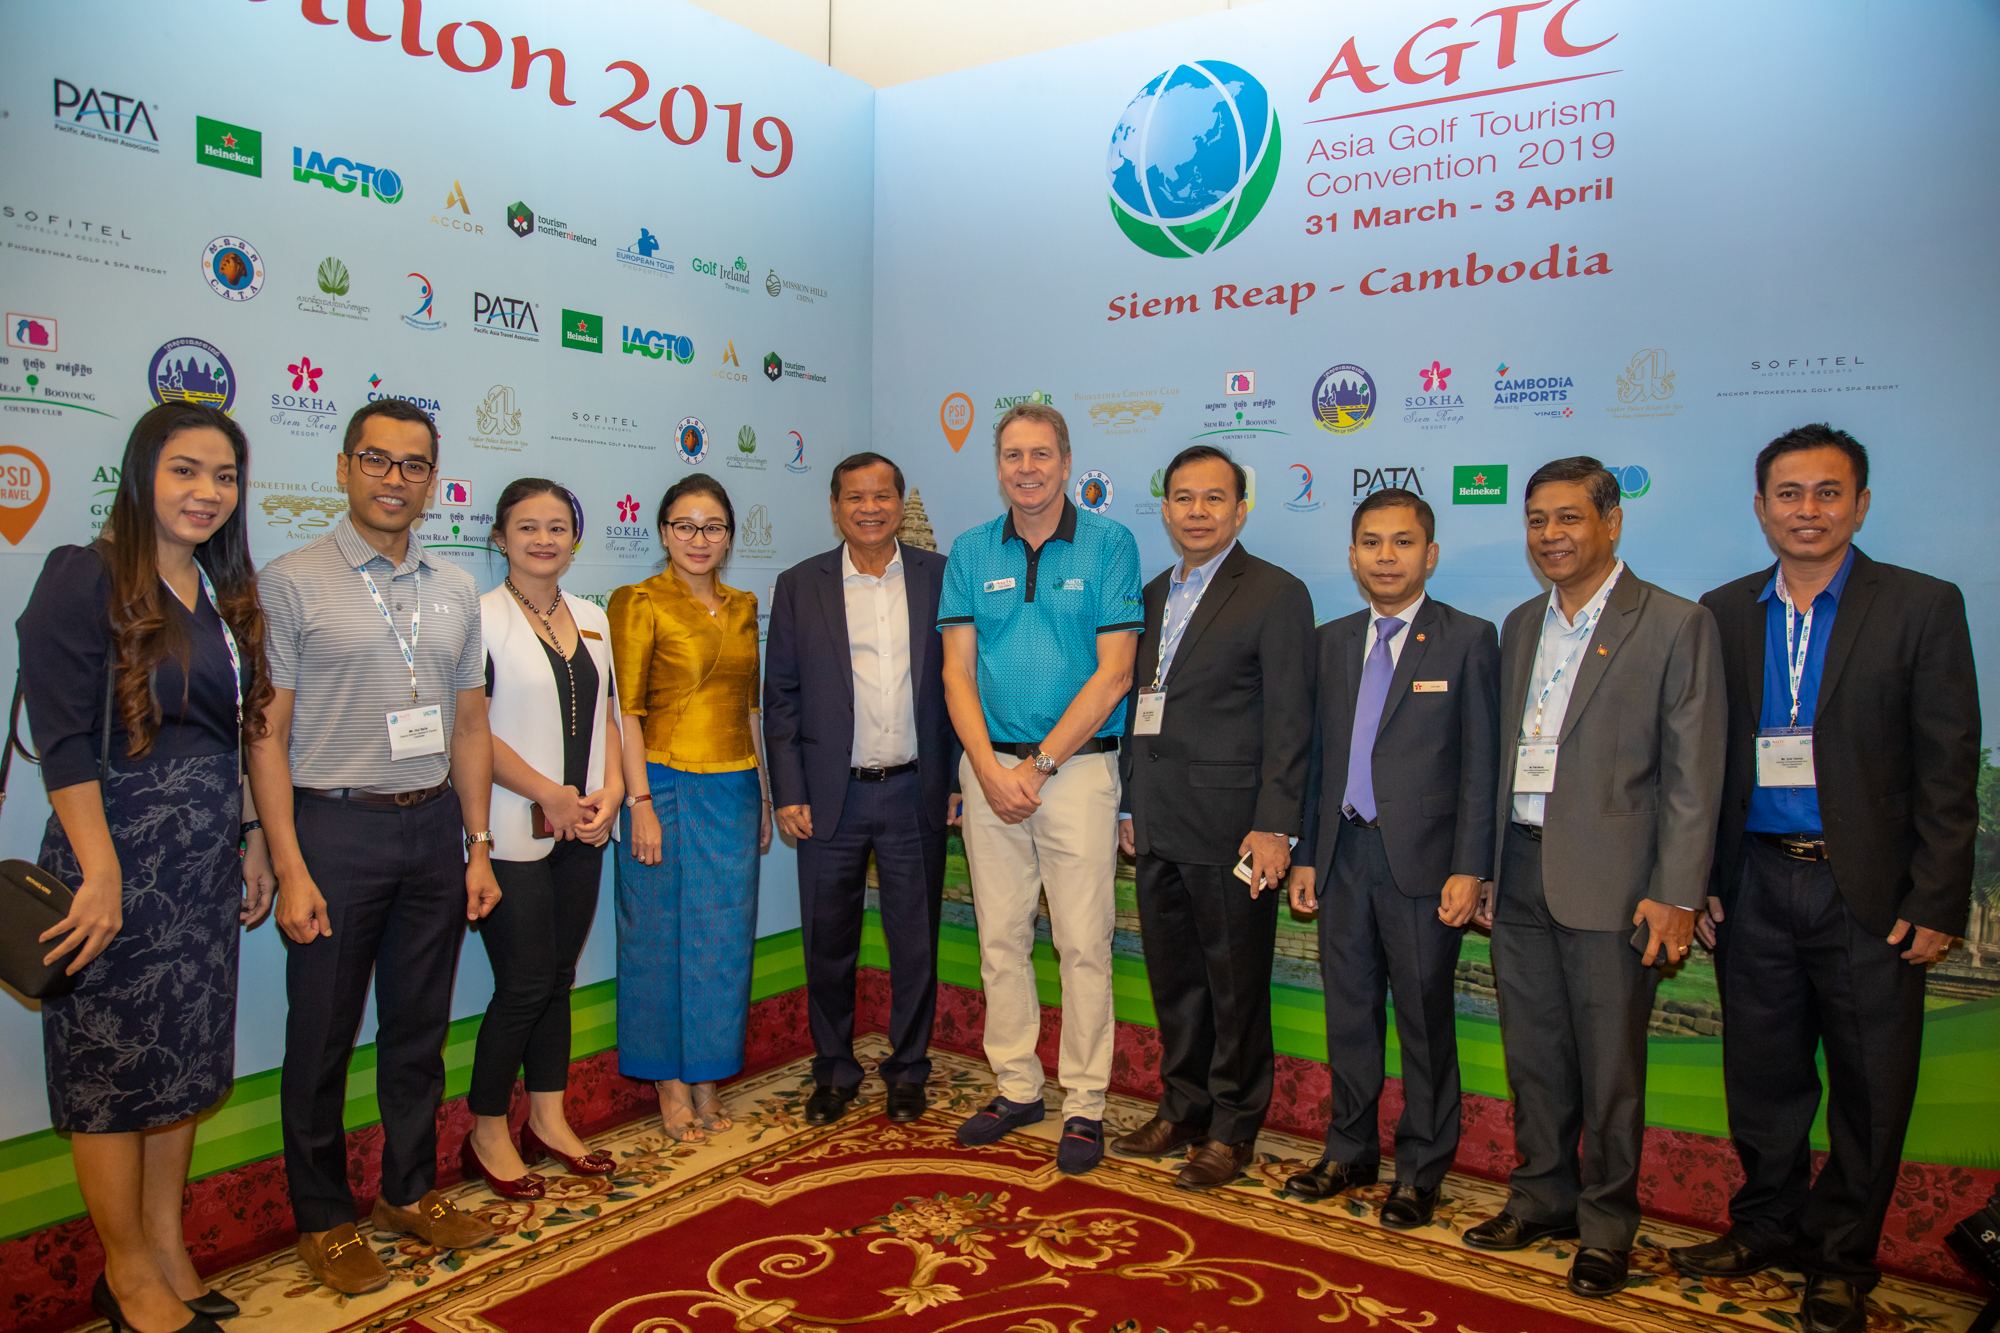 Đại hội Du lịch golf Châu Á (AGTC) – Cơ hội quảng bá cho các sân golf và đại lý du lịch của Việt Nam.